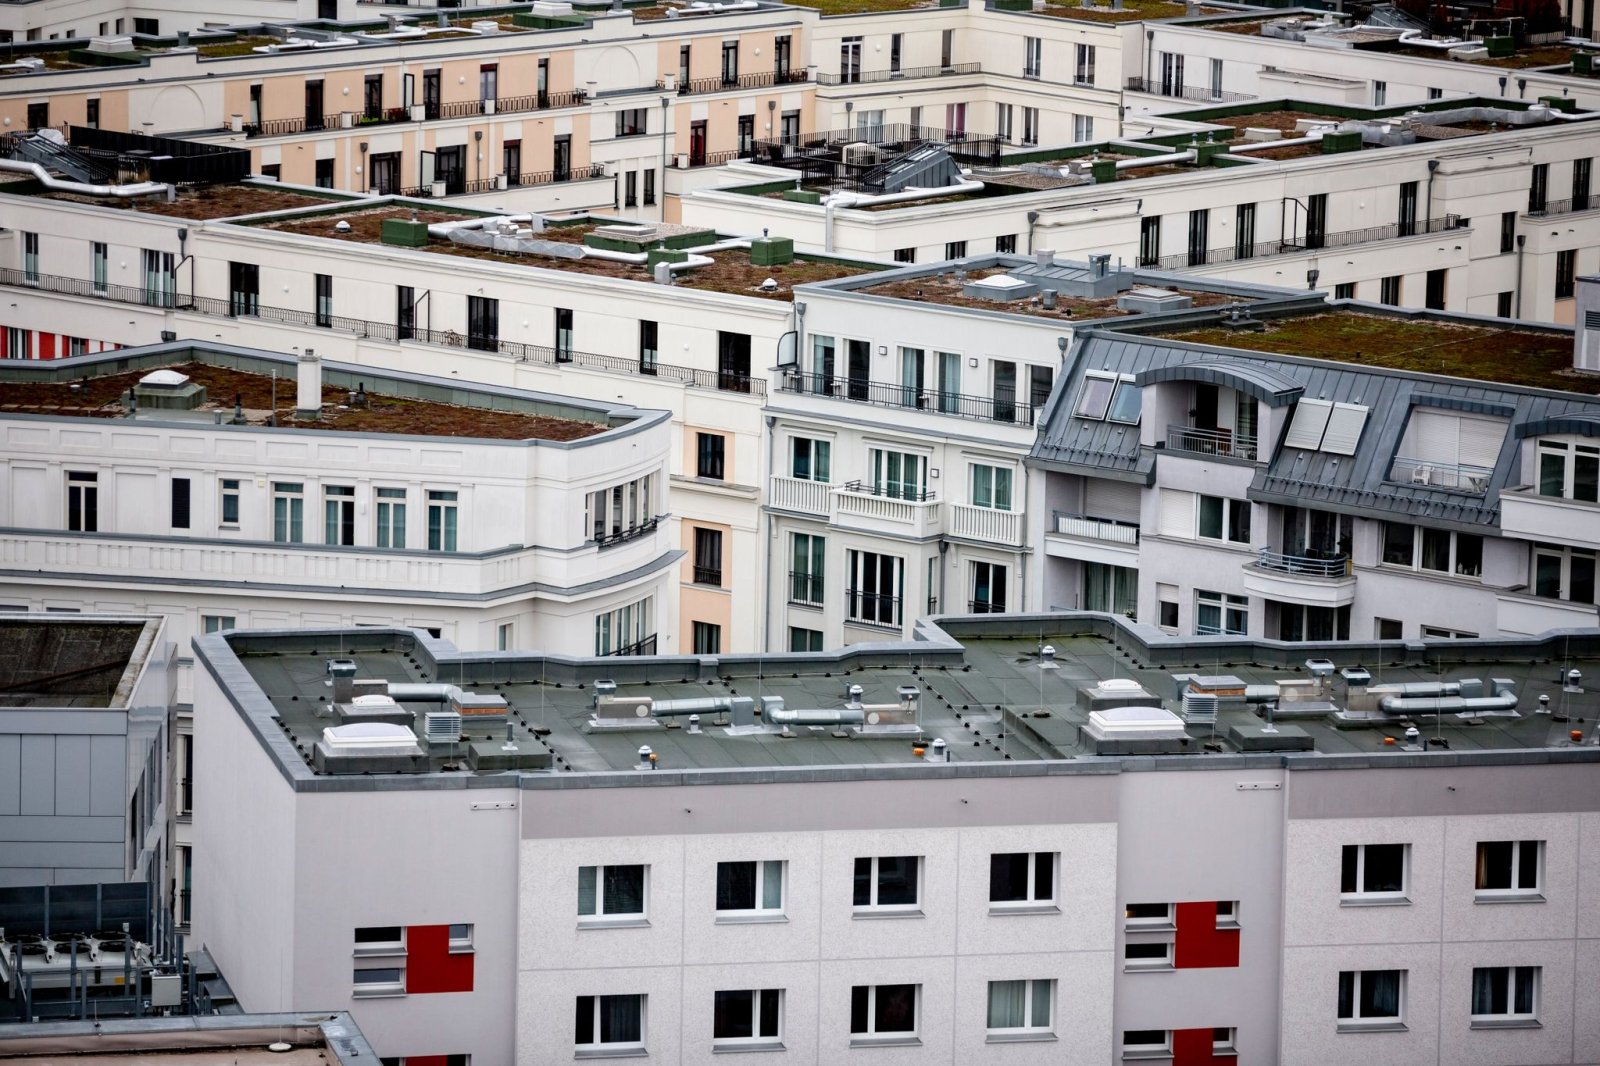 Blick über die Dächer von Mehrfamilienhäusern.